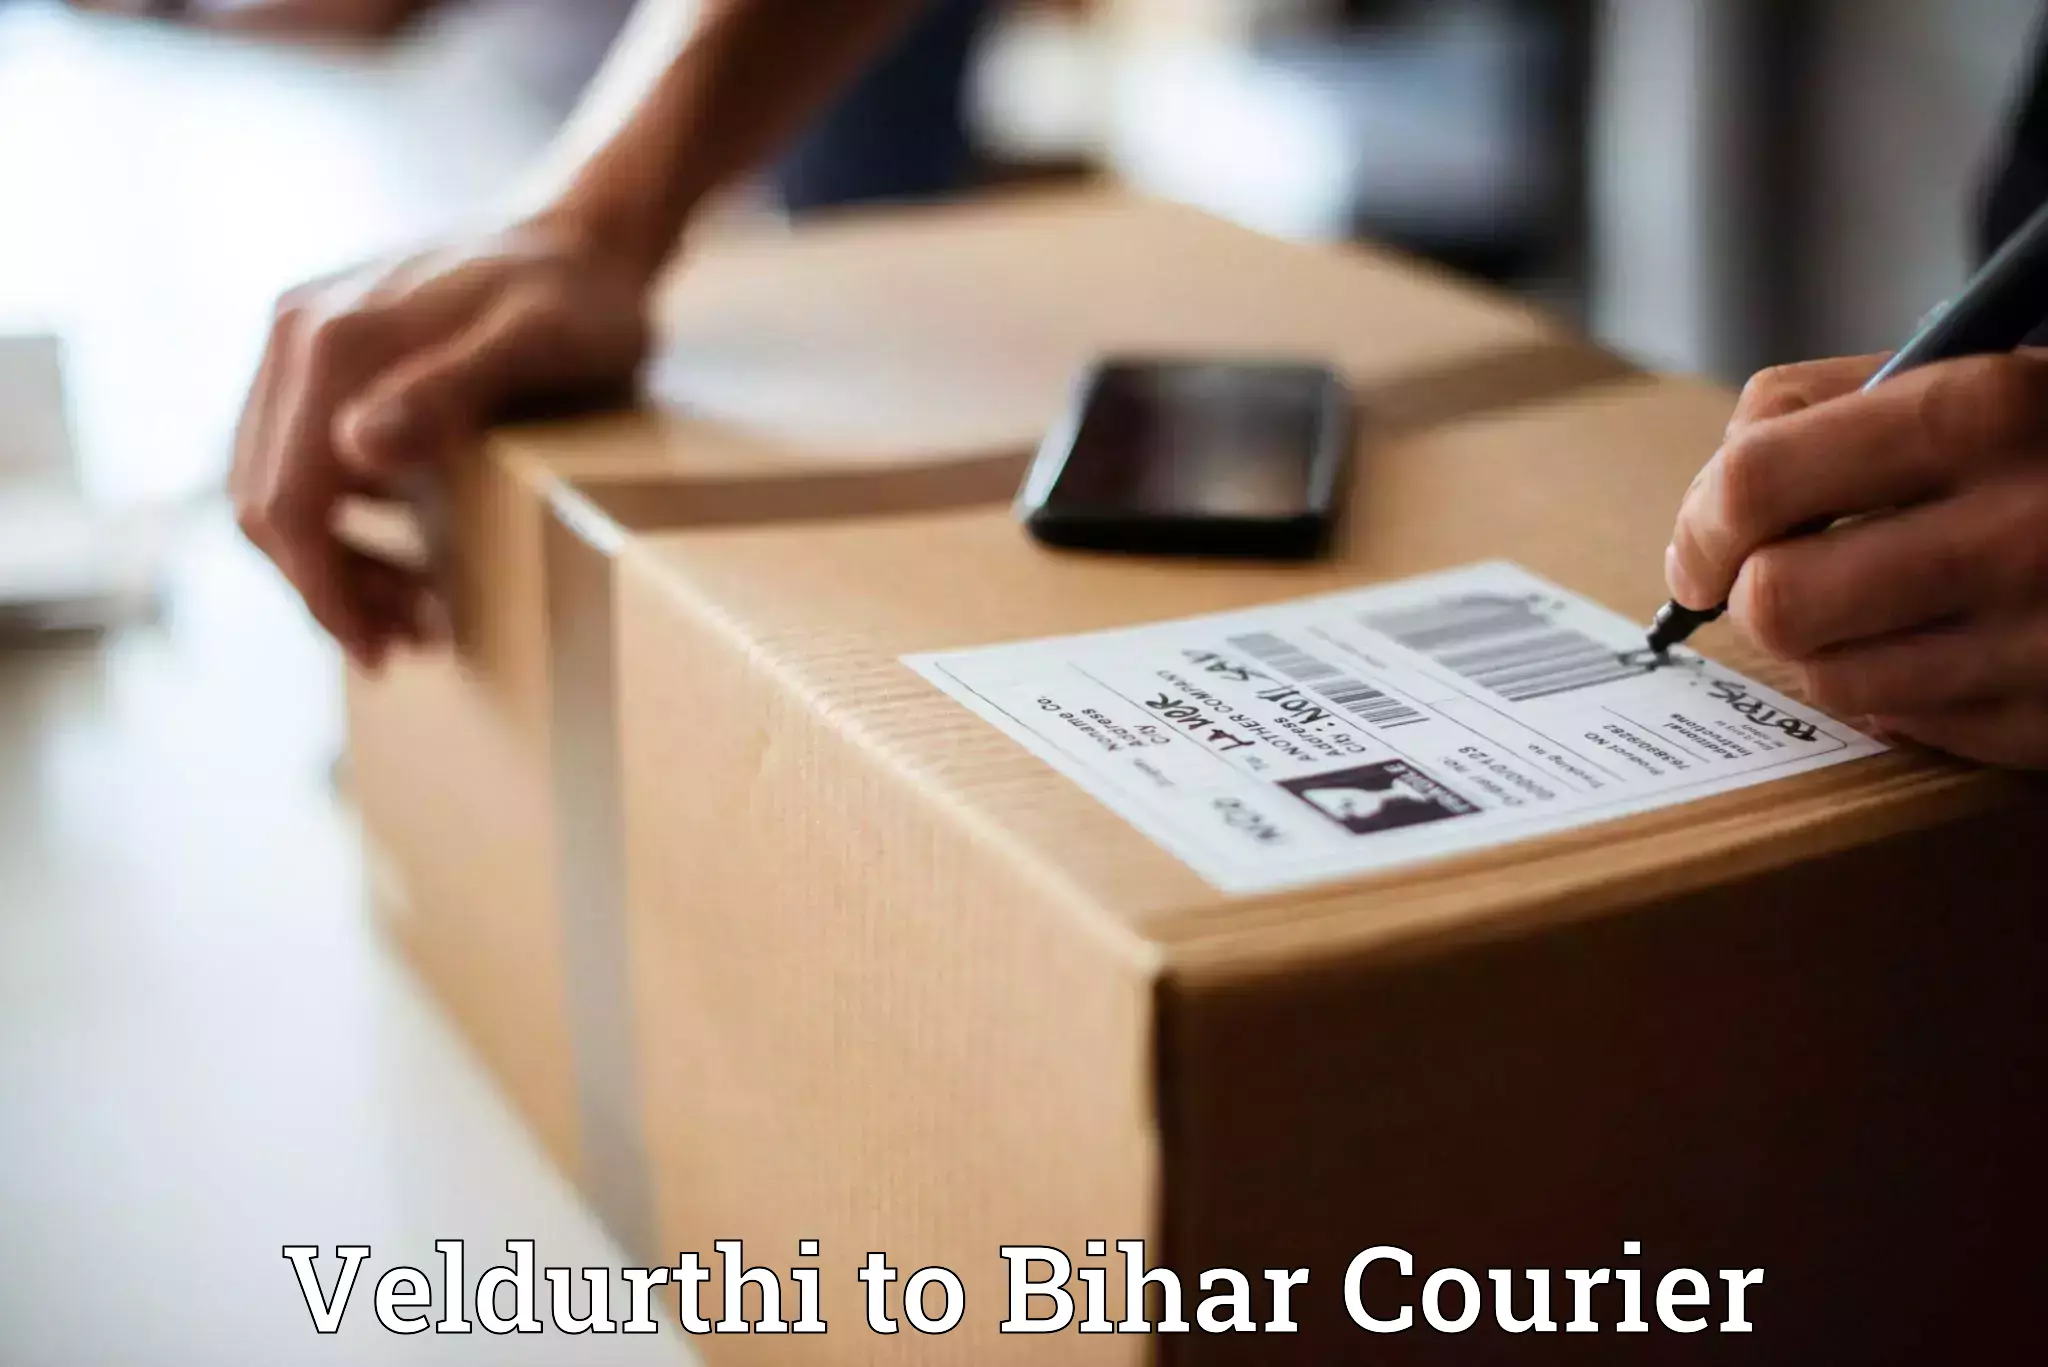 Specialized shipment handling Veldurthi to Bihar